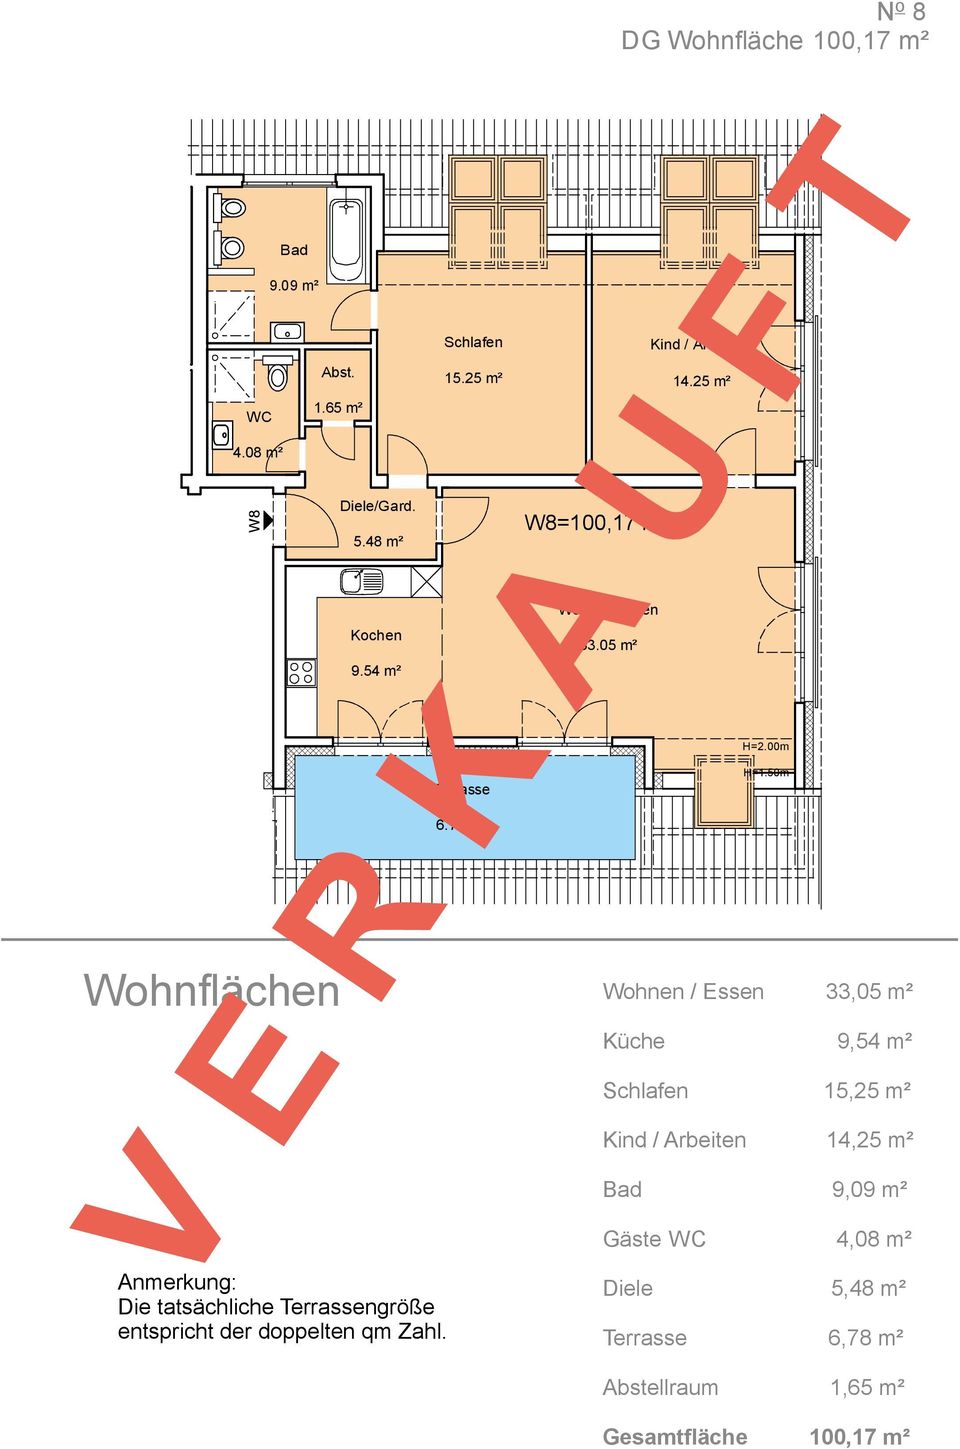 50m Wohnflächen Wohnen / Essen 33,05 m² Küche 9,54 m² Schlafen 15,25 m² Kind / Arbeiten 14,25 m² Bad 9,09 m² Gäste WC